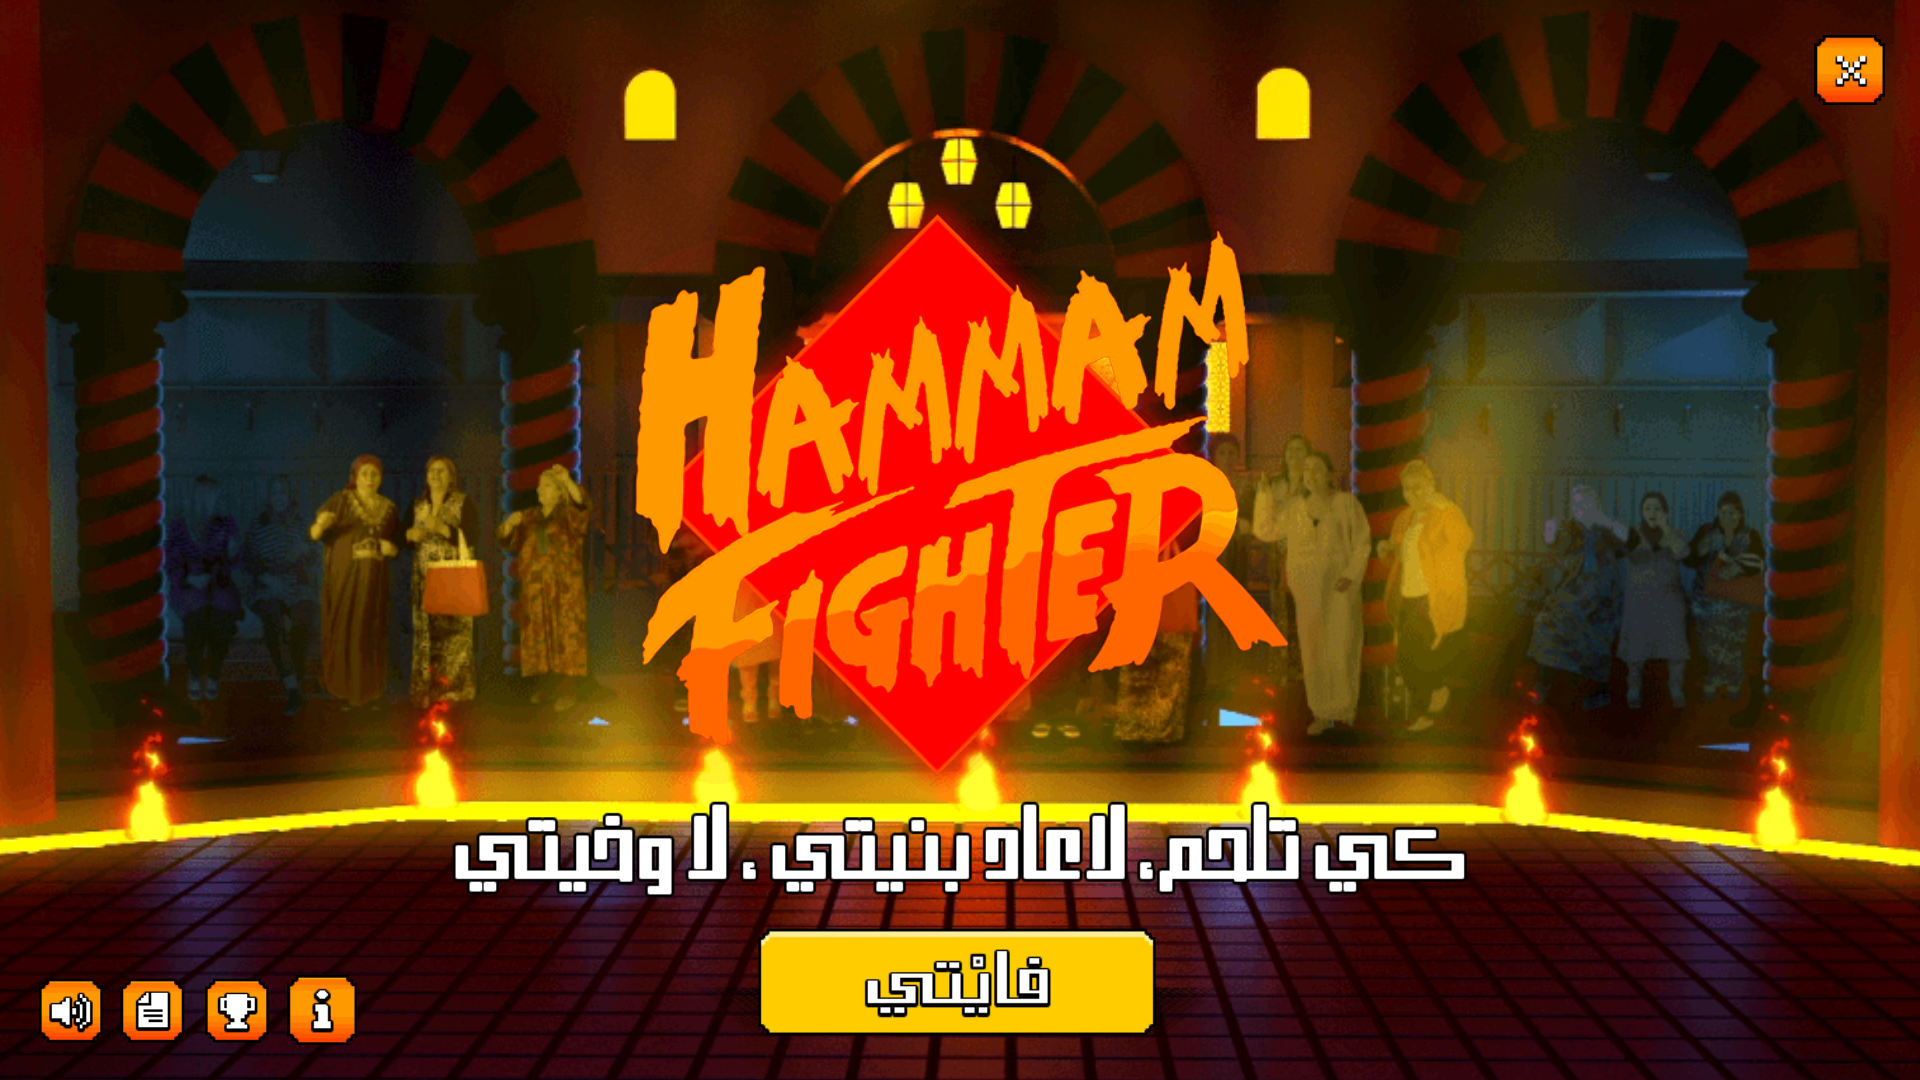 Screenshot 1 of Hammam Fighter 4.0